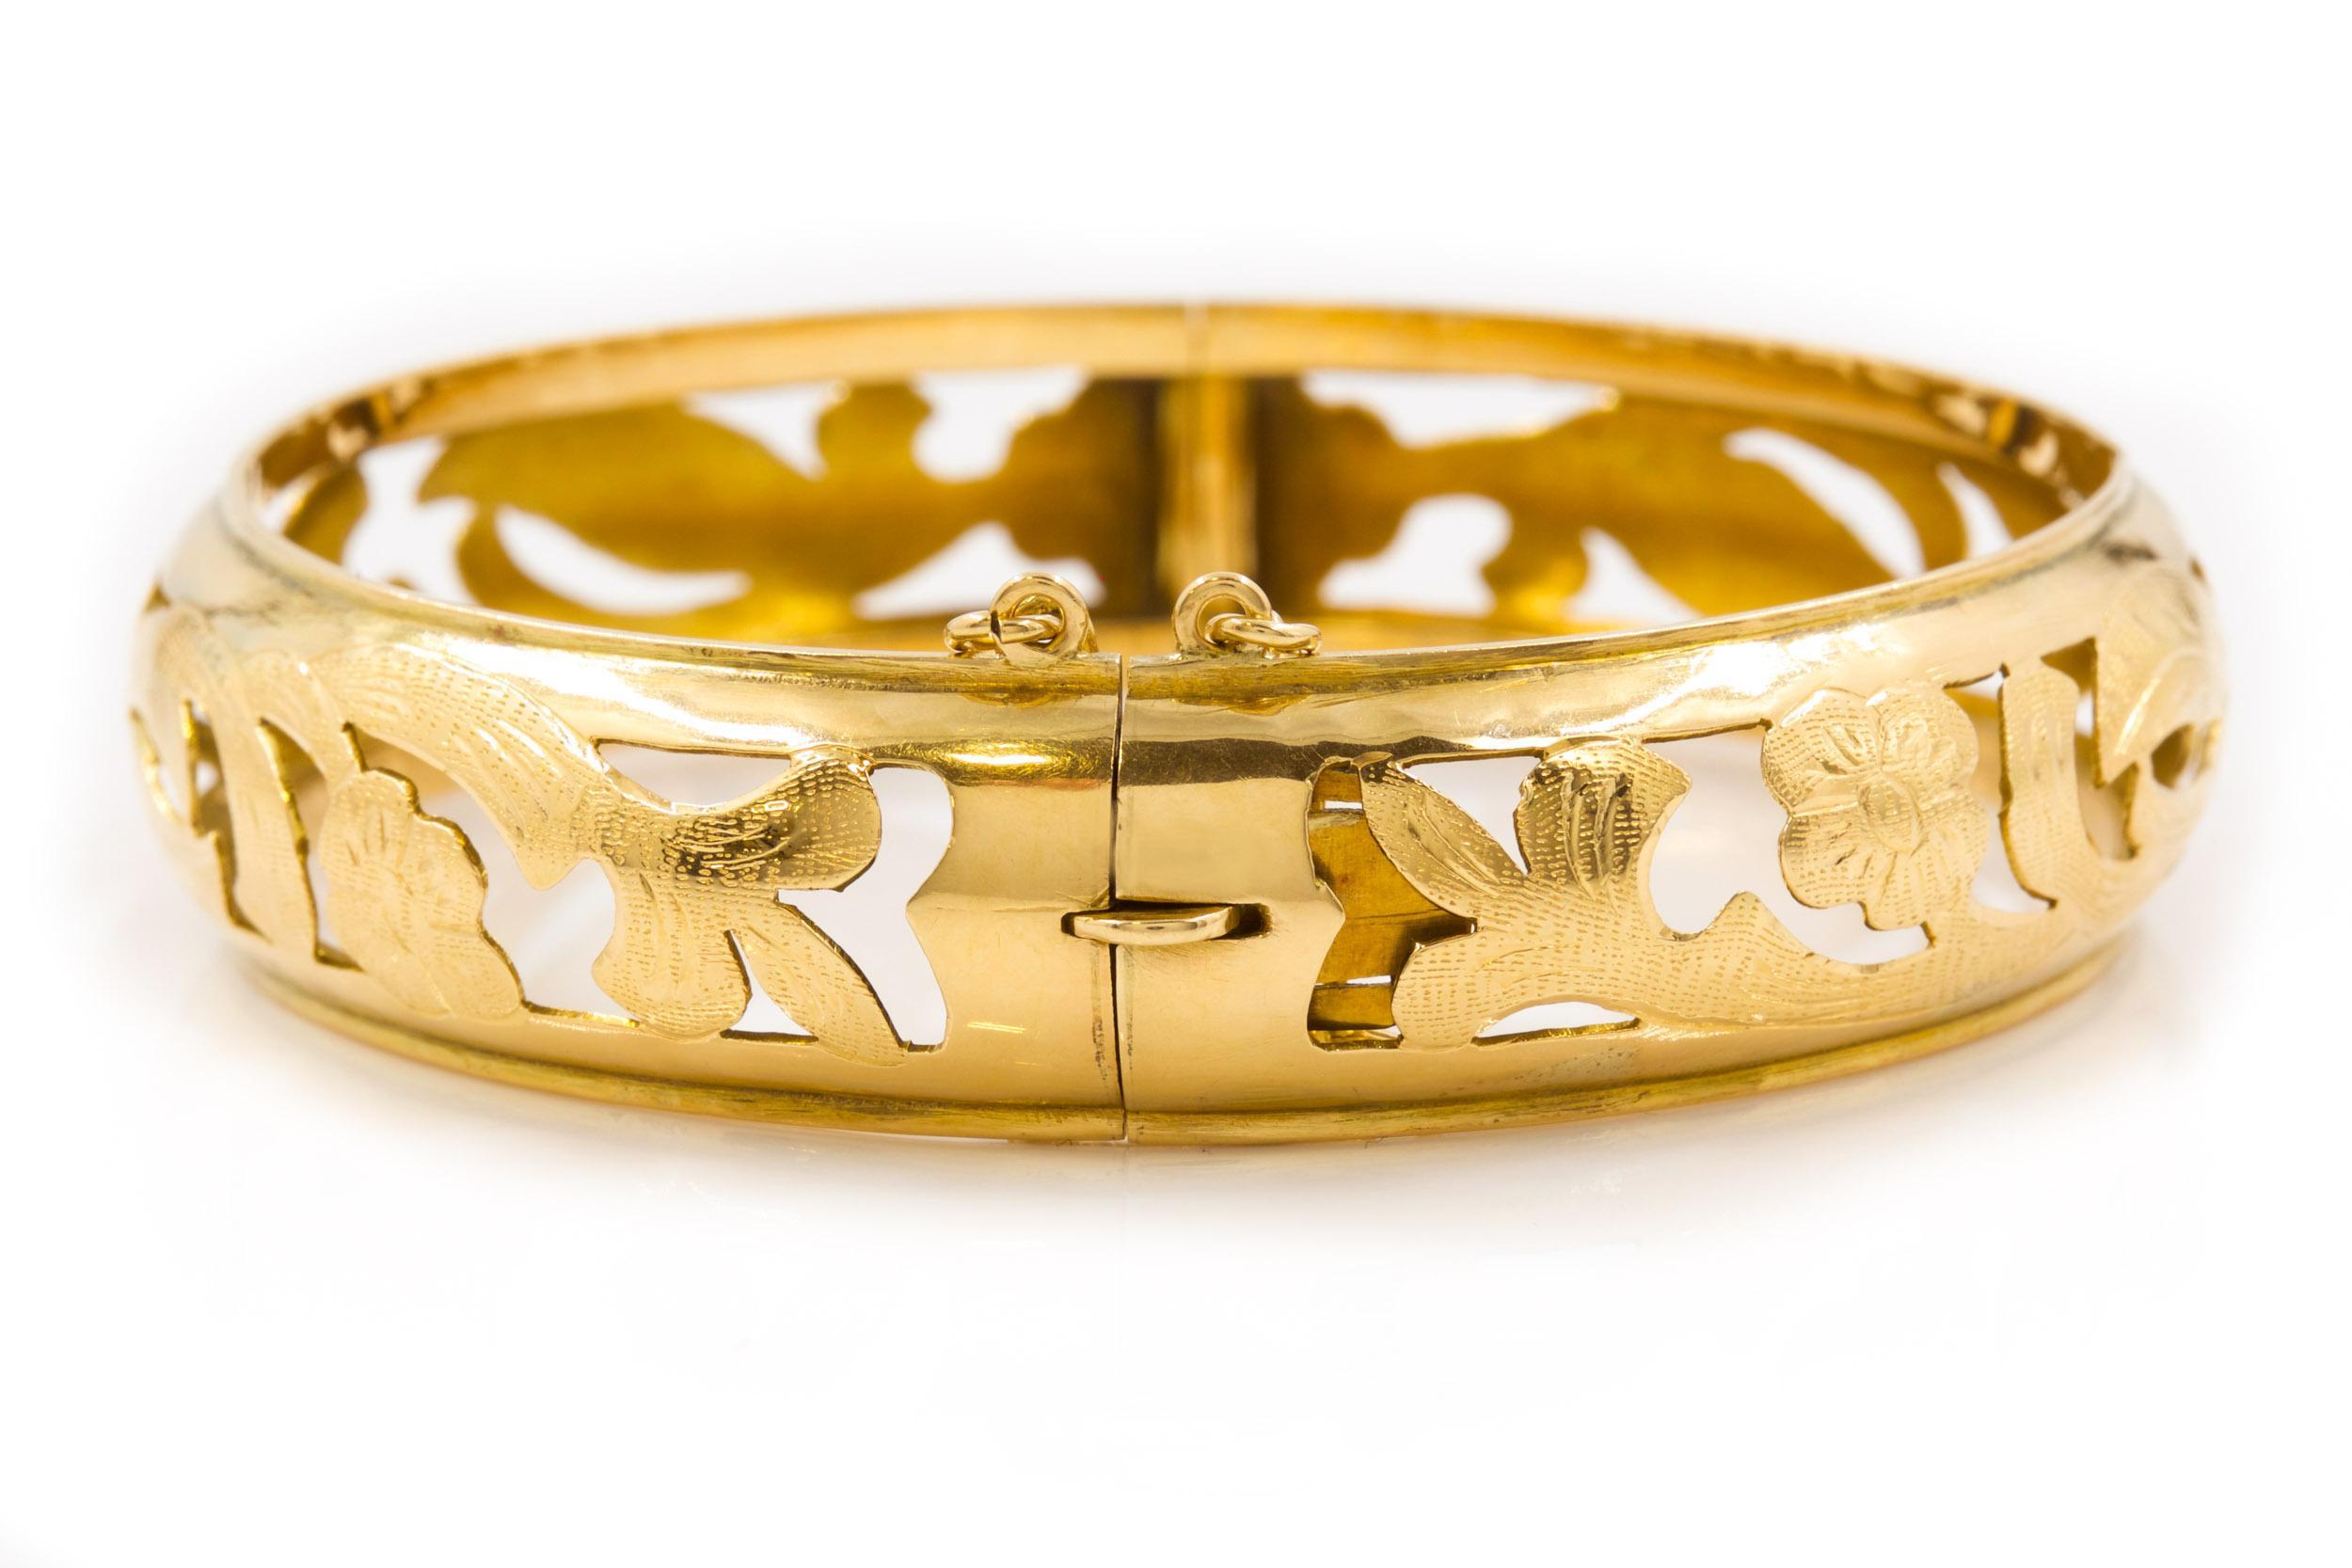 American Antique Art Nouveau 14k Yellow Gold Engraved Bangle Bracelet For Sale